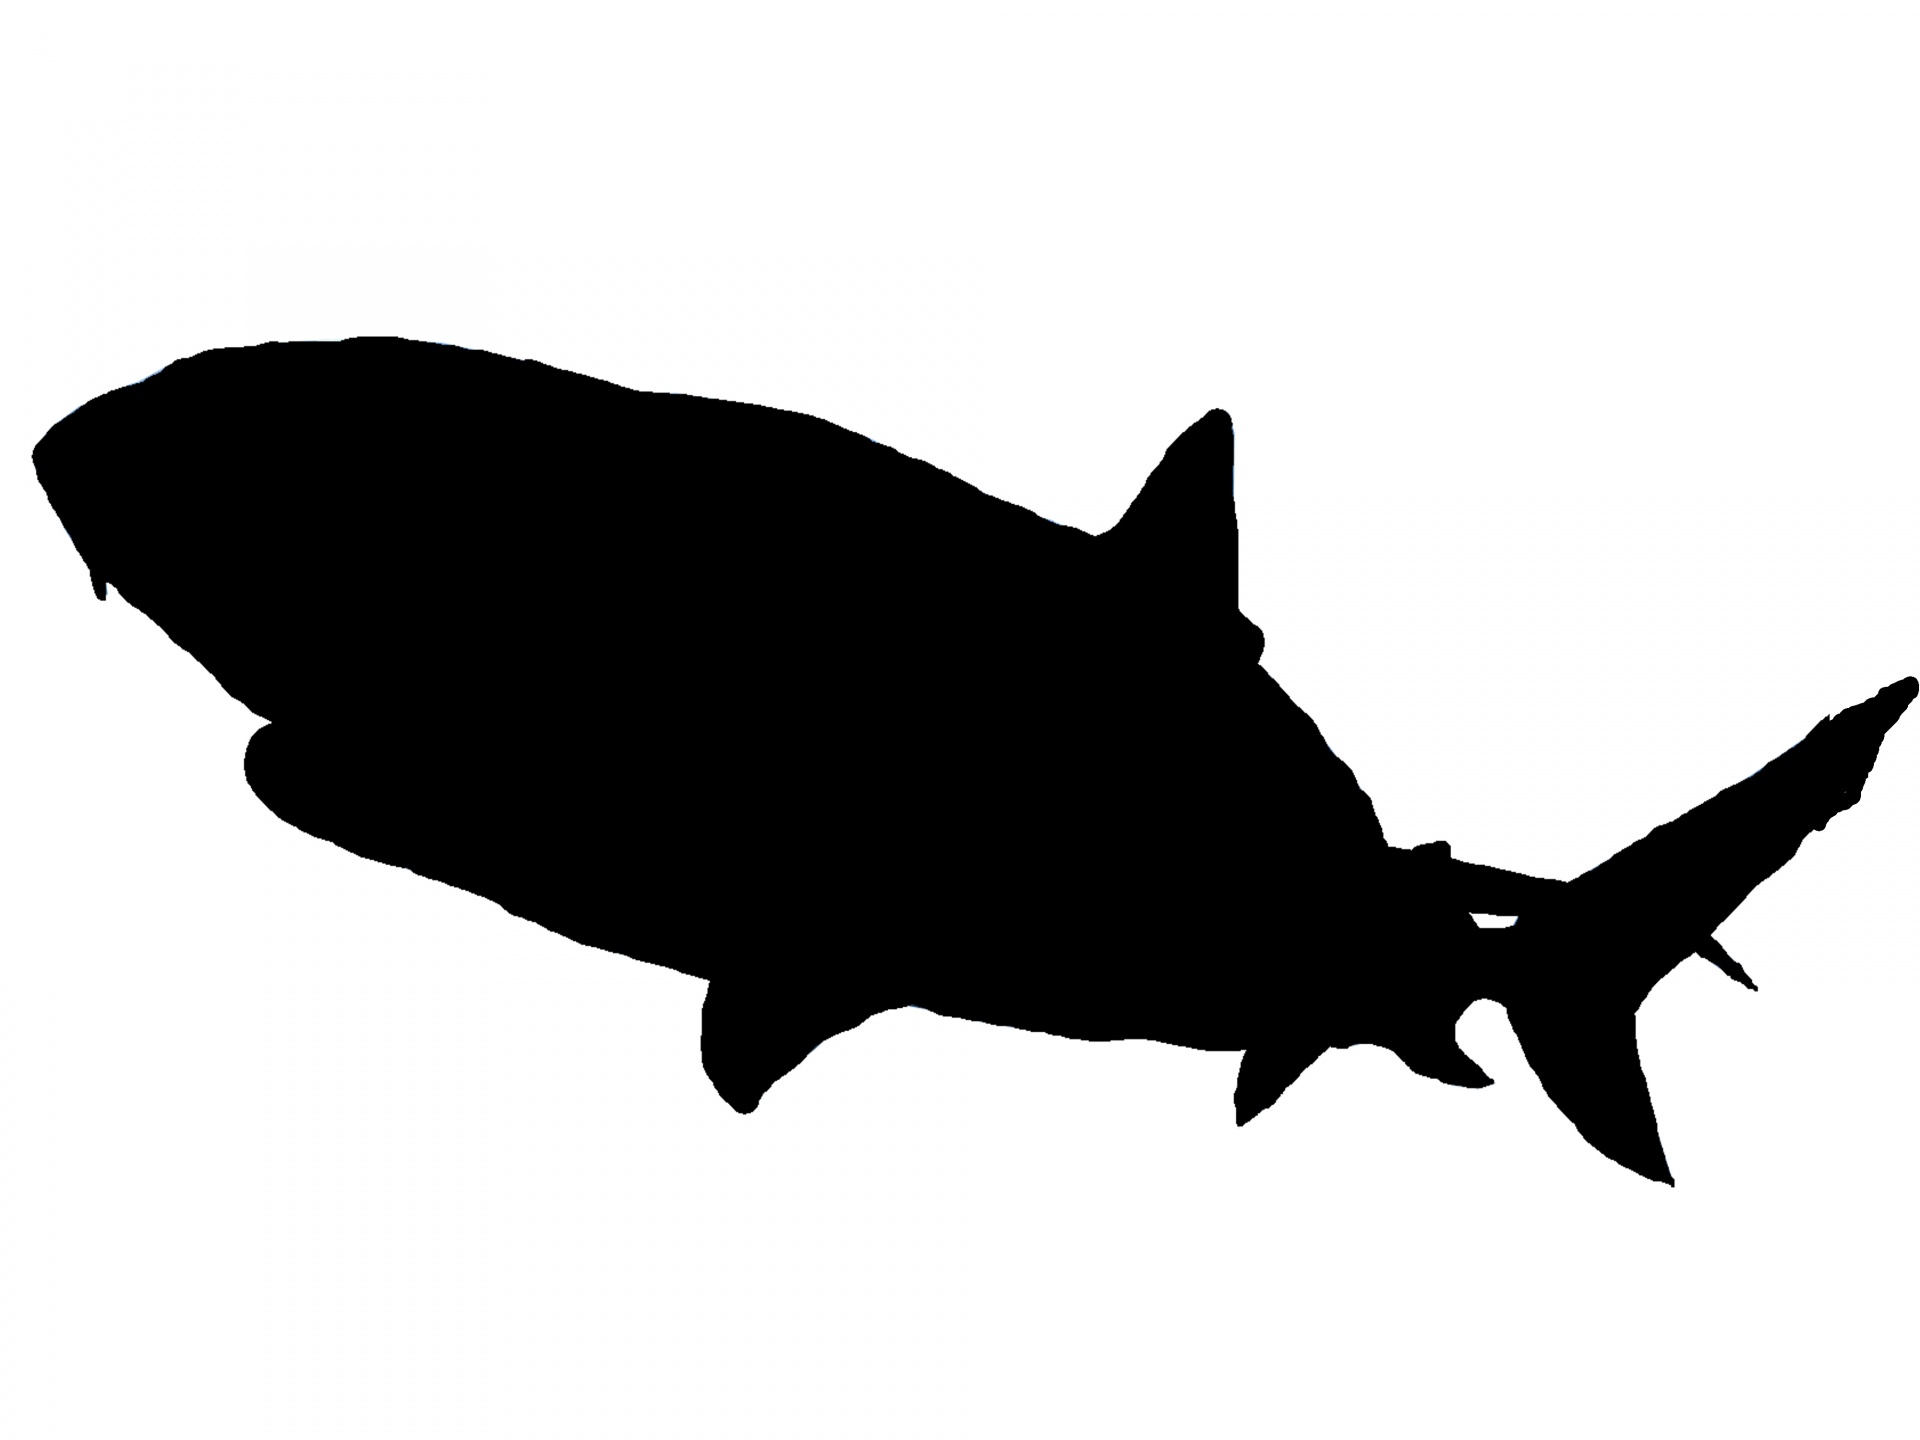 Marlin (or Shark) Espanole